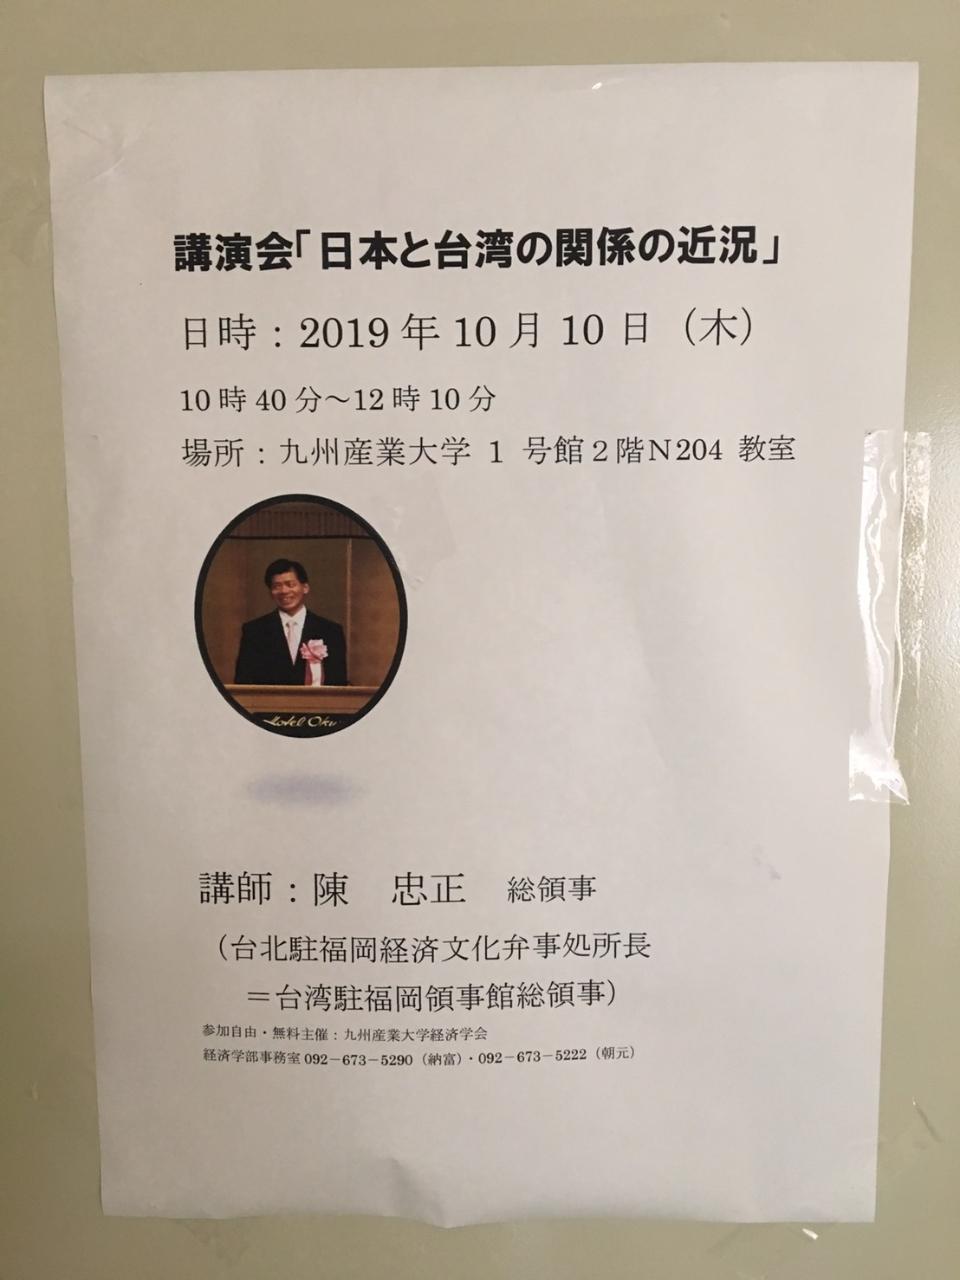 10月10日、陳総領事が九州産業大学で「日本と台湾の関係の近況」をテーマに講演をした。